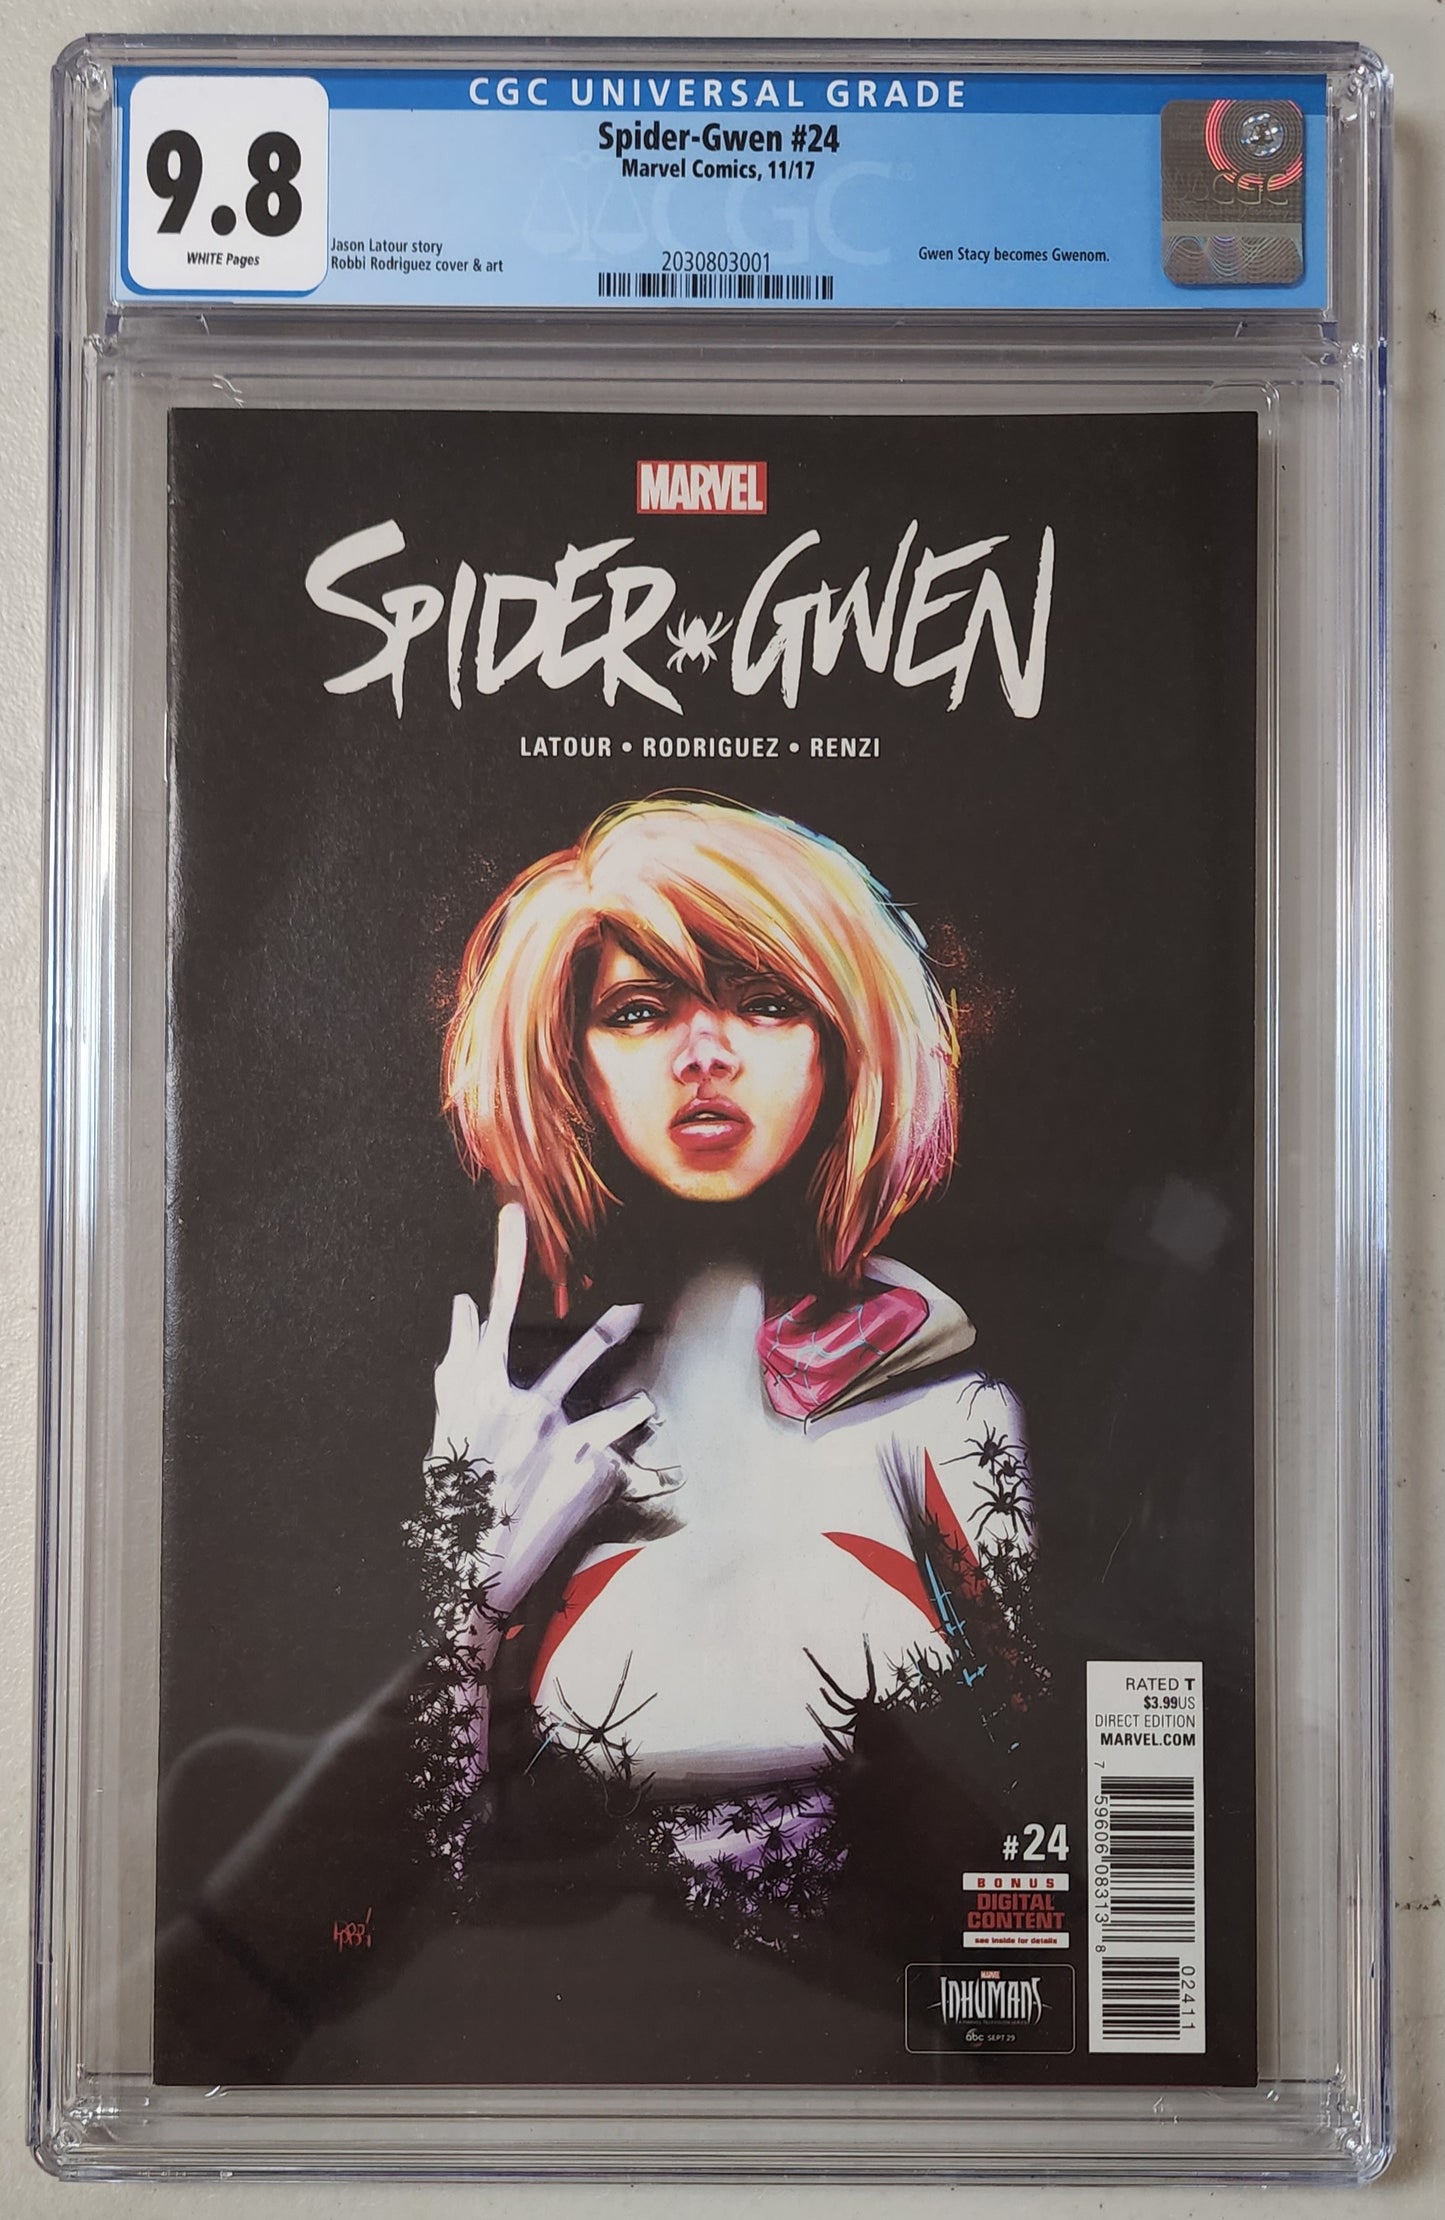 9.8 CGC Spider-Gwen #24 1st Print (Gwen Stacy becomes Gwenom) 2017 [2030803001]